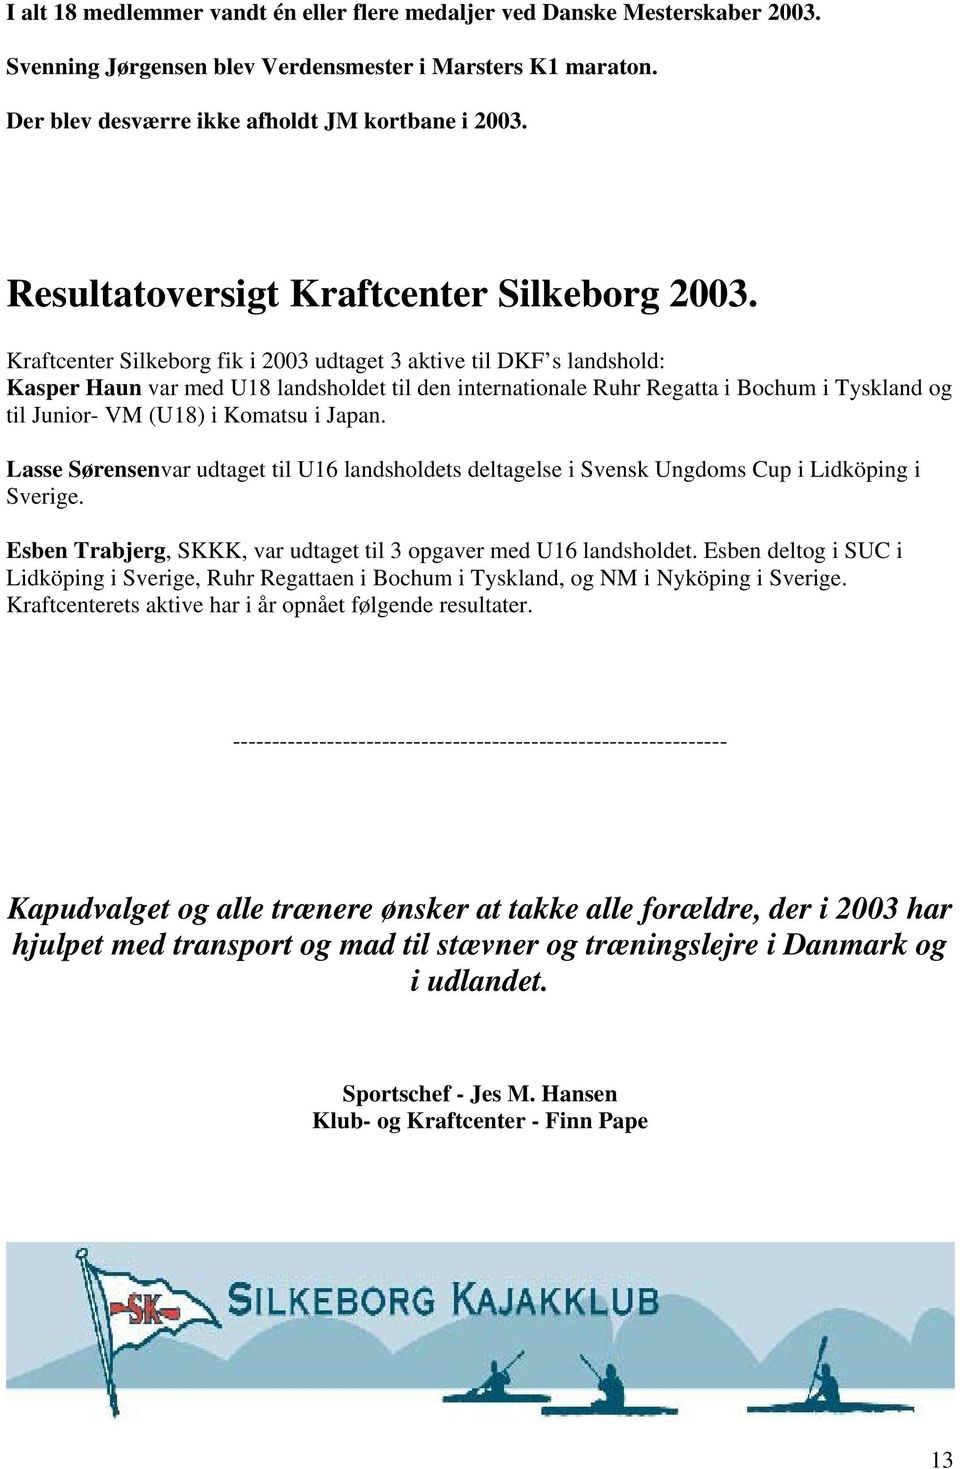 Kraftcenter Silkeborg fik i 2003 udtaget 3 aktive til DKF s landshold: Kasper Haun var med U18 landsholdet til den internationale Ruhr Regatta i Bochum i Tyskland og til Junior- VM (U18) i Komatsu i